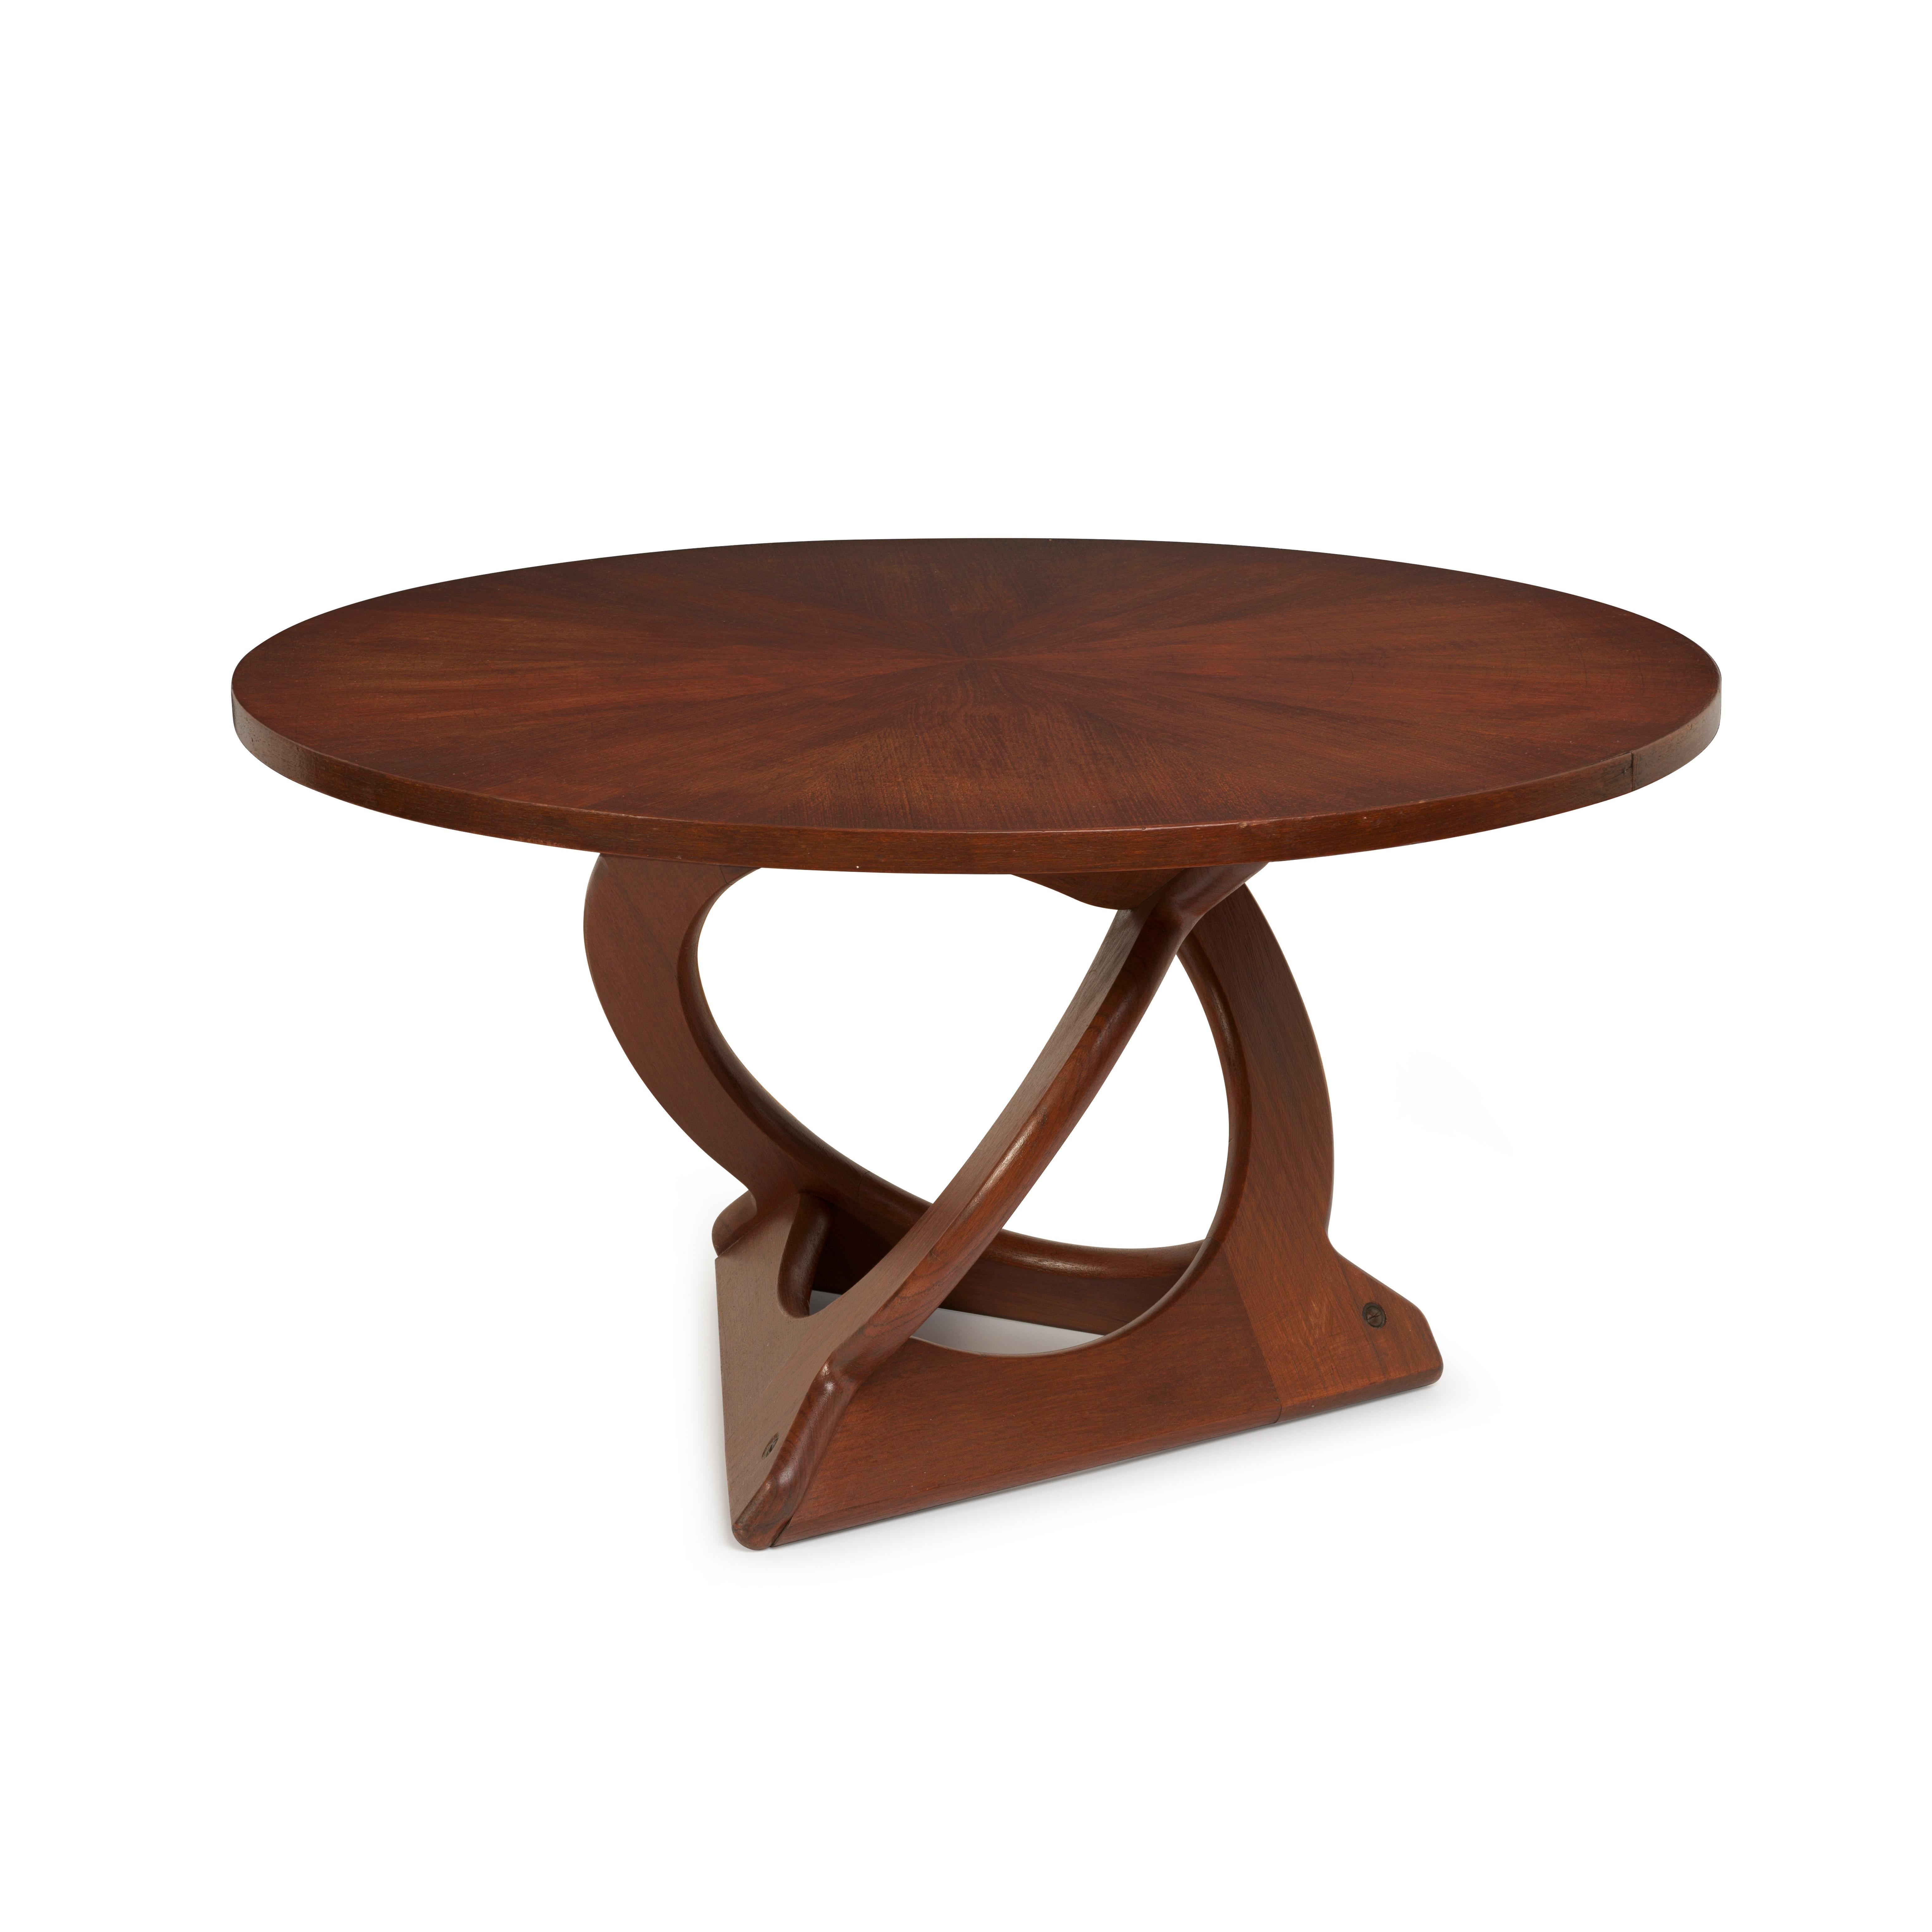 Cette table basse danoise en teck moderne du milieu du siècle a été conçue par le designer danois Søren Georg Jensen et produite par Kubus. Le design est sculptural, avec des pieds entrelacés qui interagissent les uns avec les autres de manière